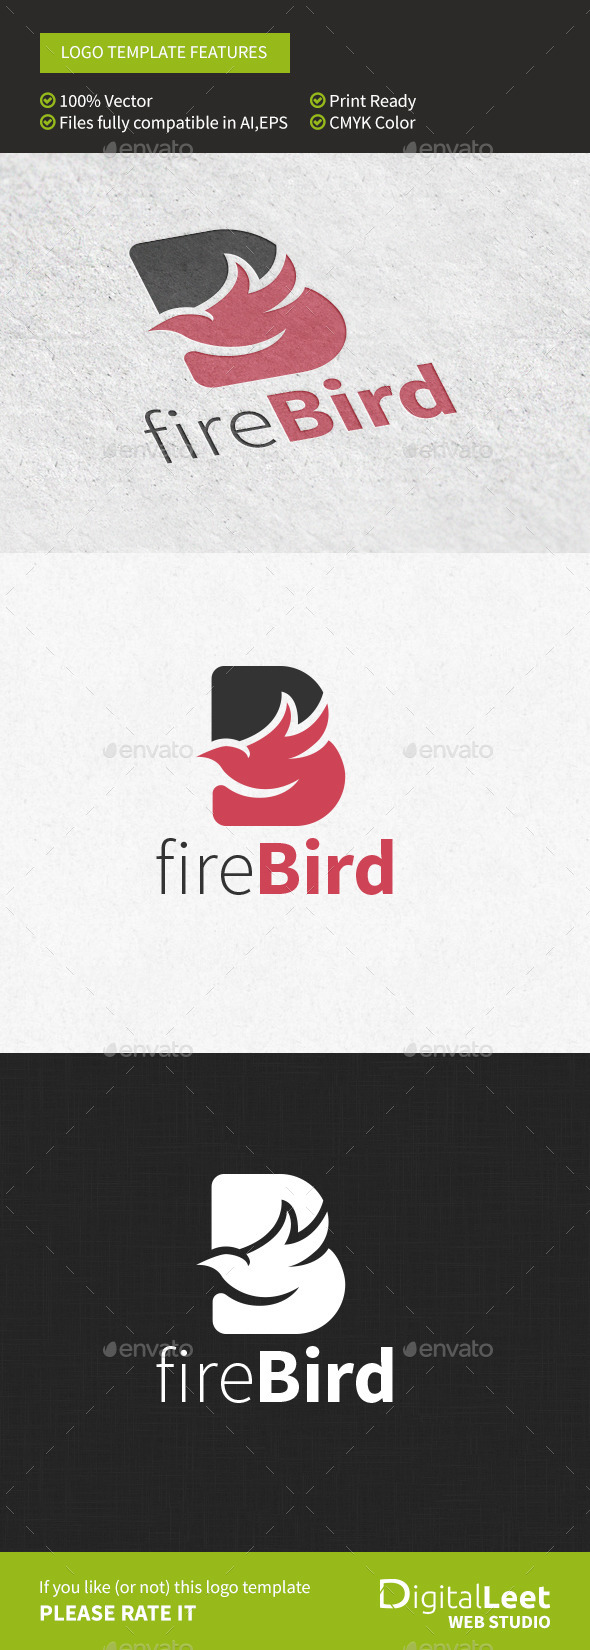 Firebird - 